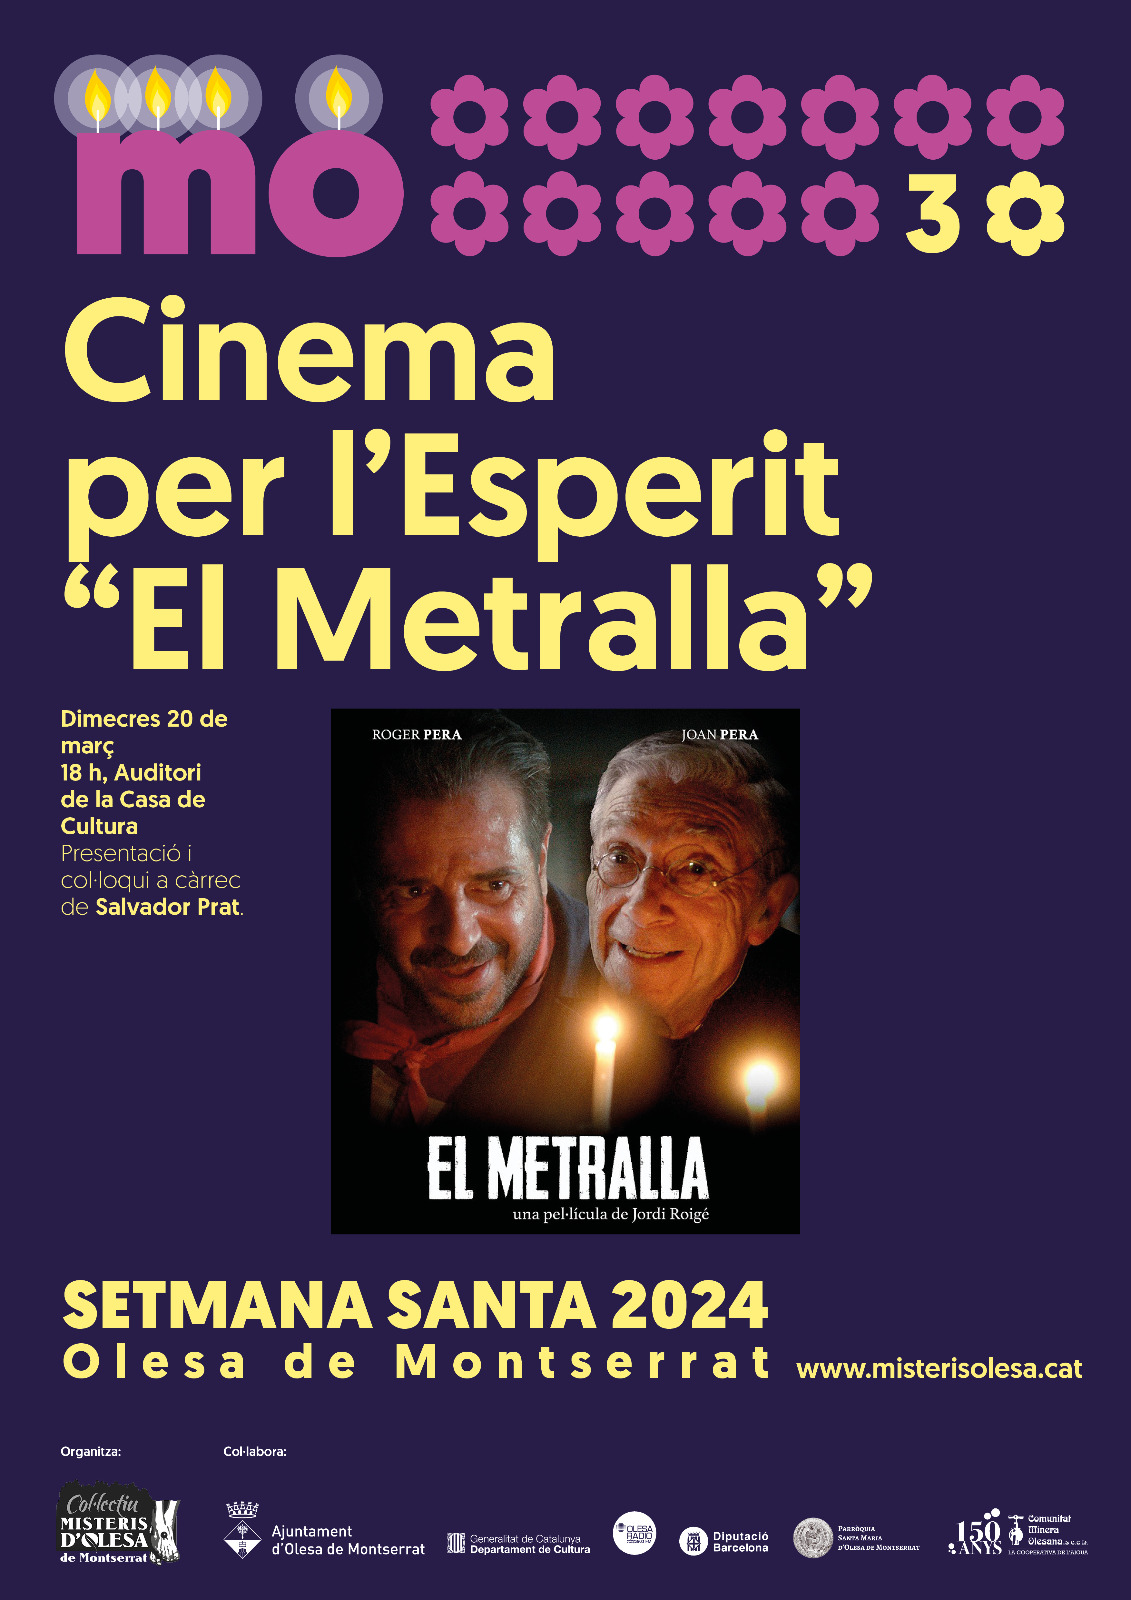 Cartell de la projecció de la pel·lícula El Metralla per la Setmana Santa 2024